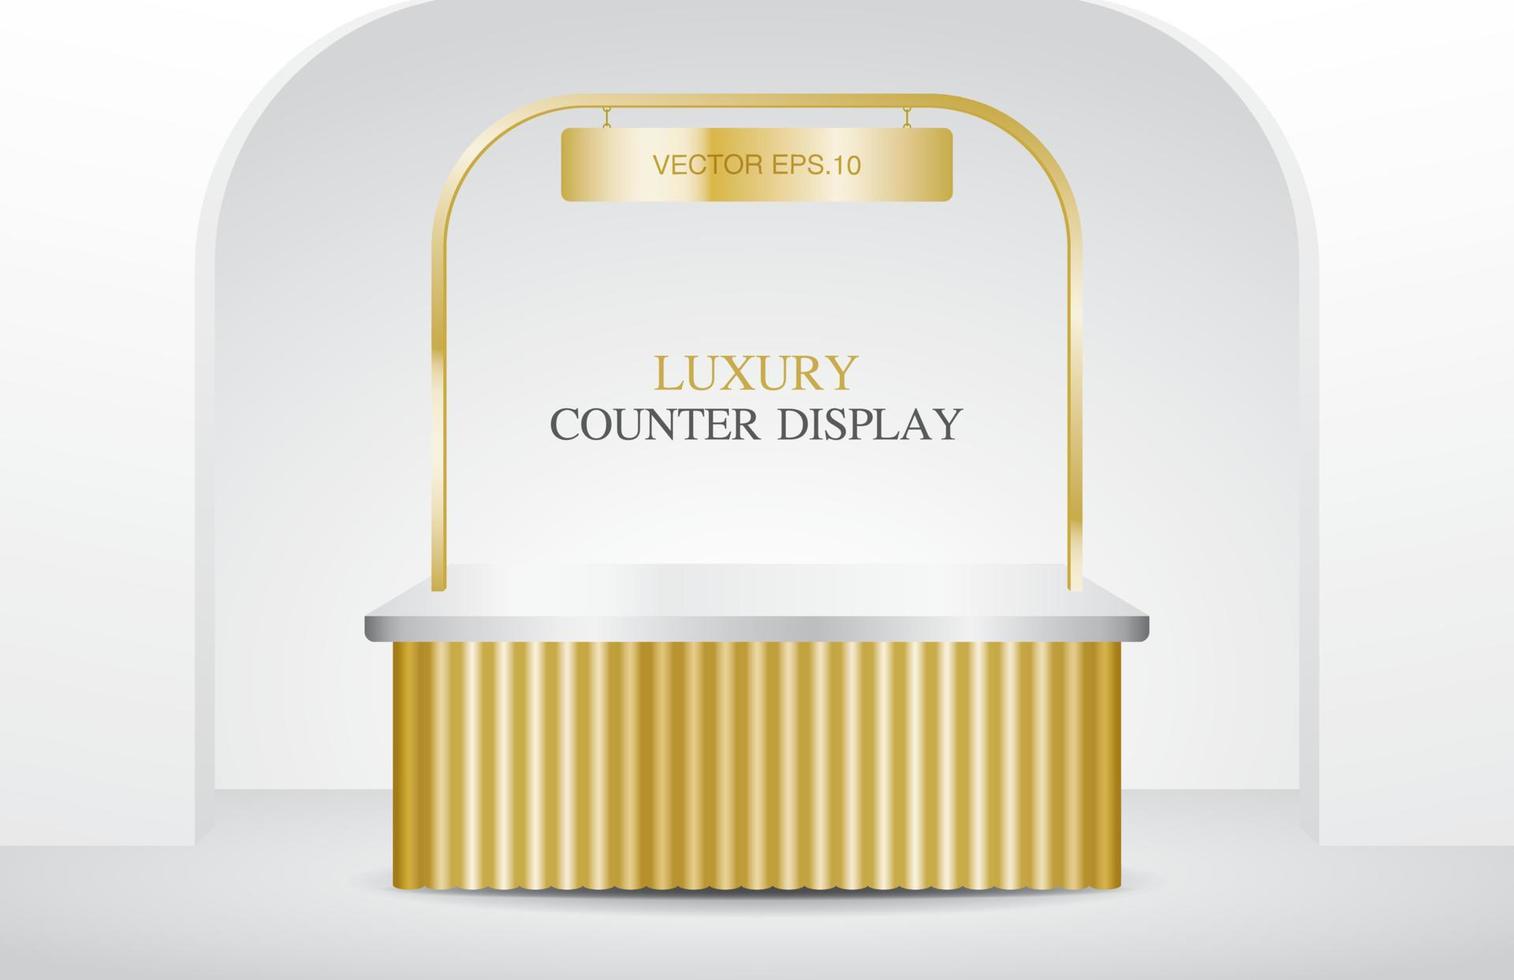 kiosque de comptoir de luxe en or brillant avec signe suspendu vecteur d'illustration 3d pour mettre votre objet